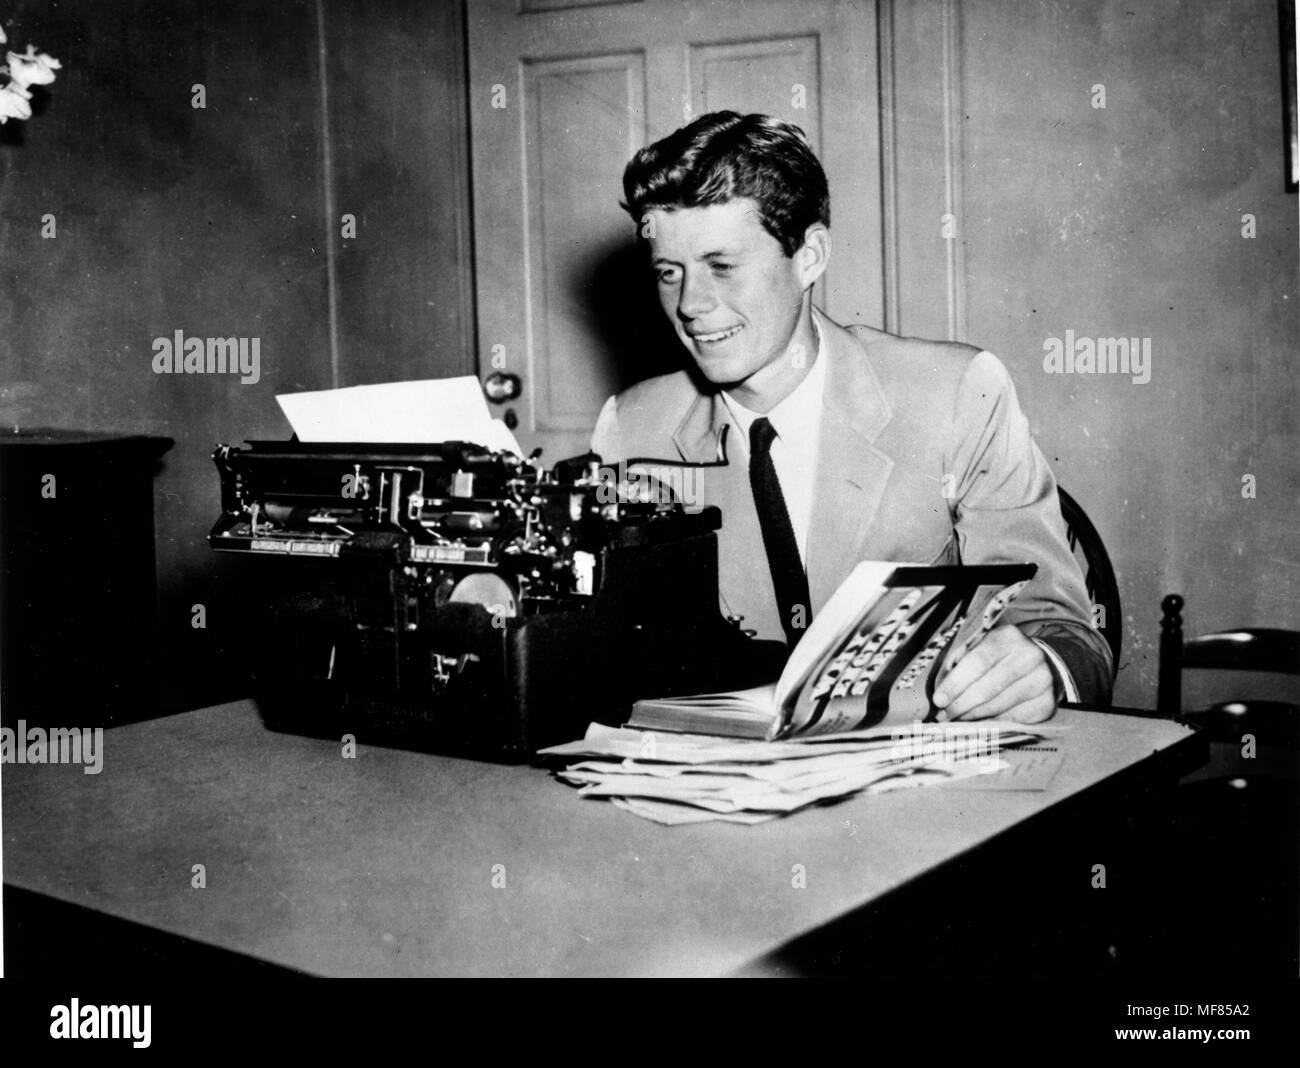 NLK 93-49 P27 Ca. 1940 John F. Kennedy bei einer Schreibmaschine mit seinem Buch "Warum England geschlafen." Bitte schreiben Sie 'John F. Kennedy Presidential Library und Museum, Boston' Stockfoto